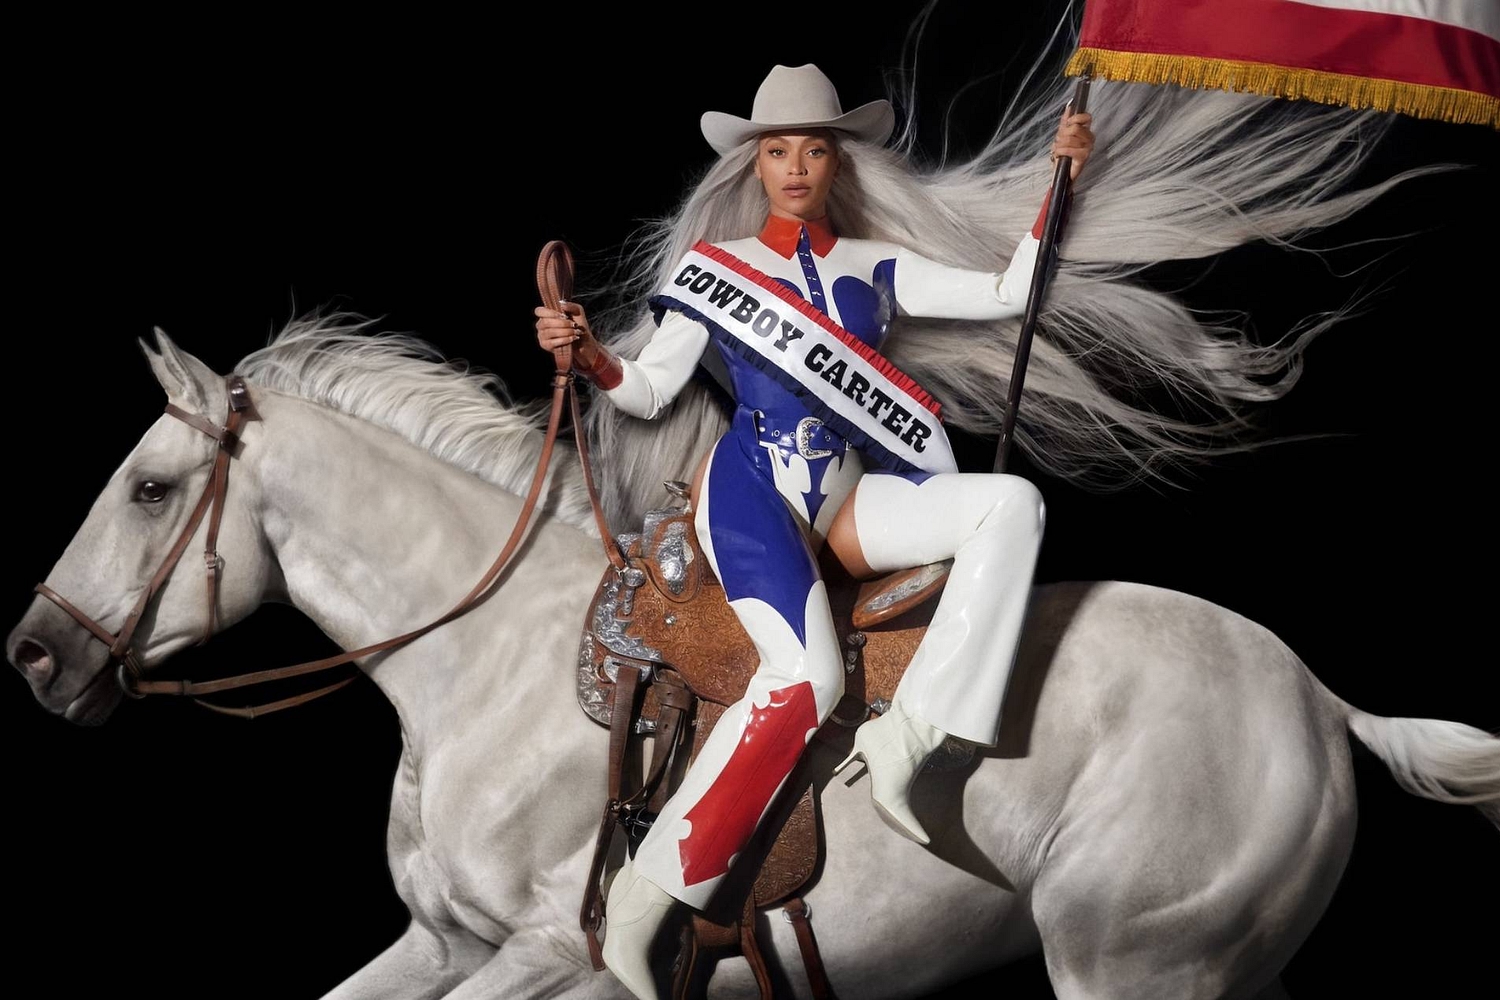 Beyoncé unveils details of 'Renaissance Act II' new country album 'Cowboy Carter'